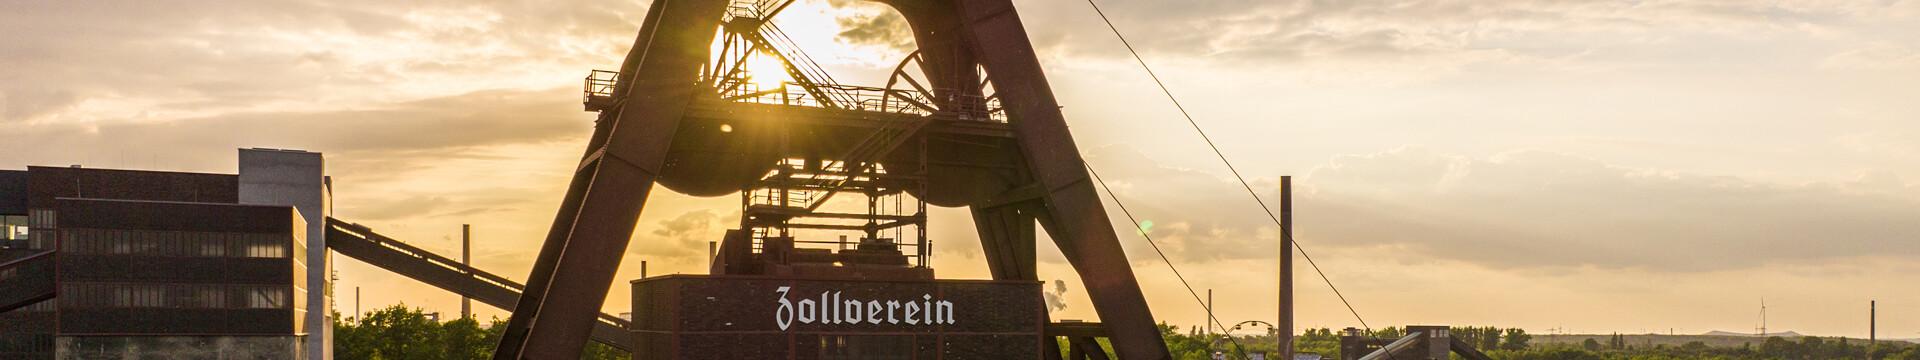 Der markante Doppelbock-Turm von Zeche Zollverein in Essen vor Sonnenuntergang